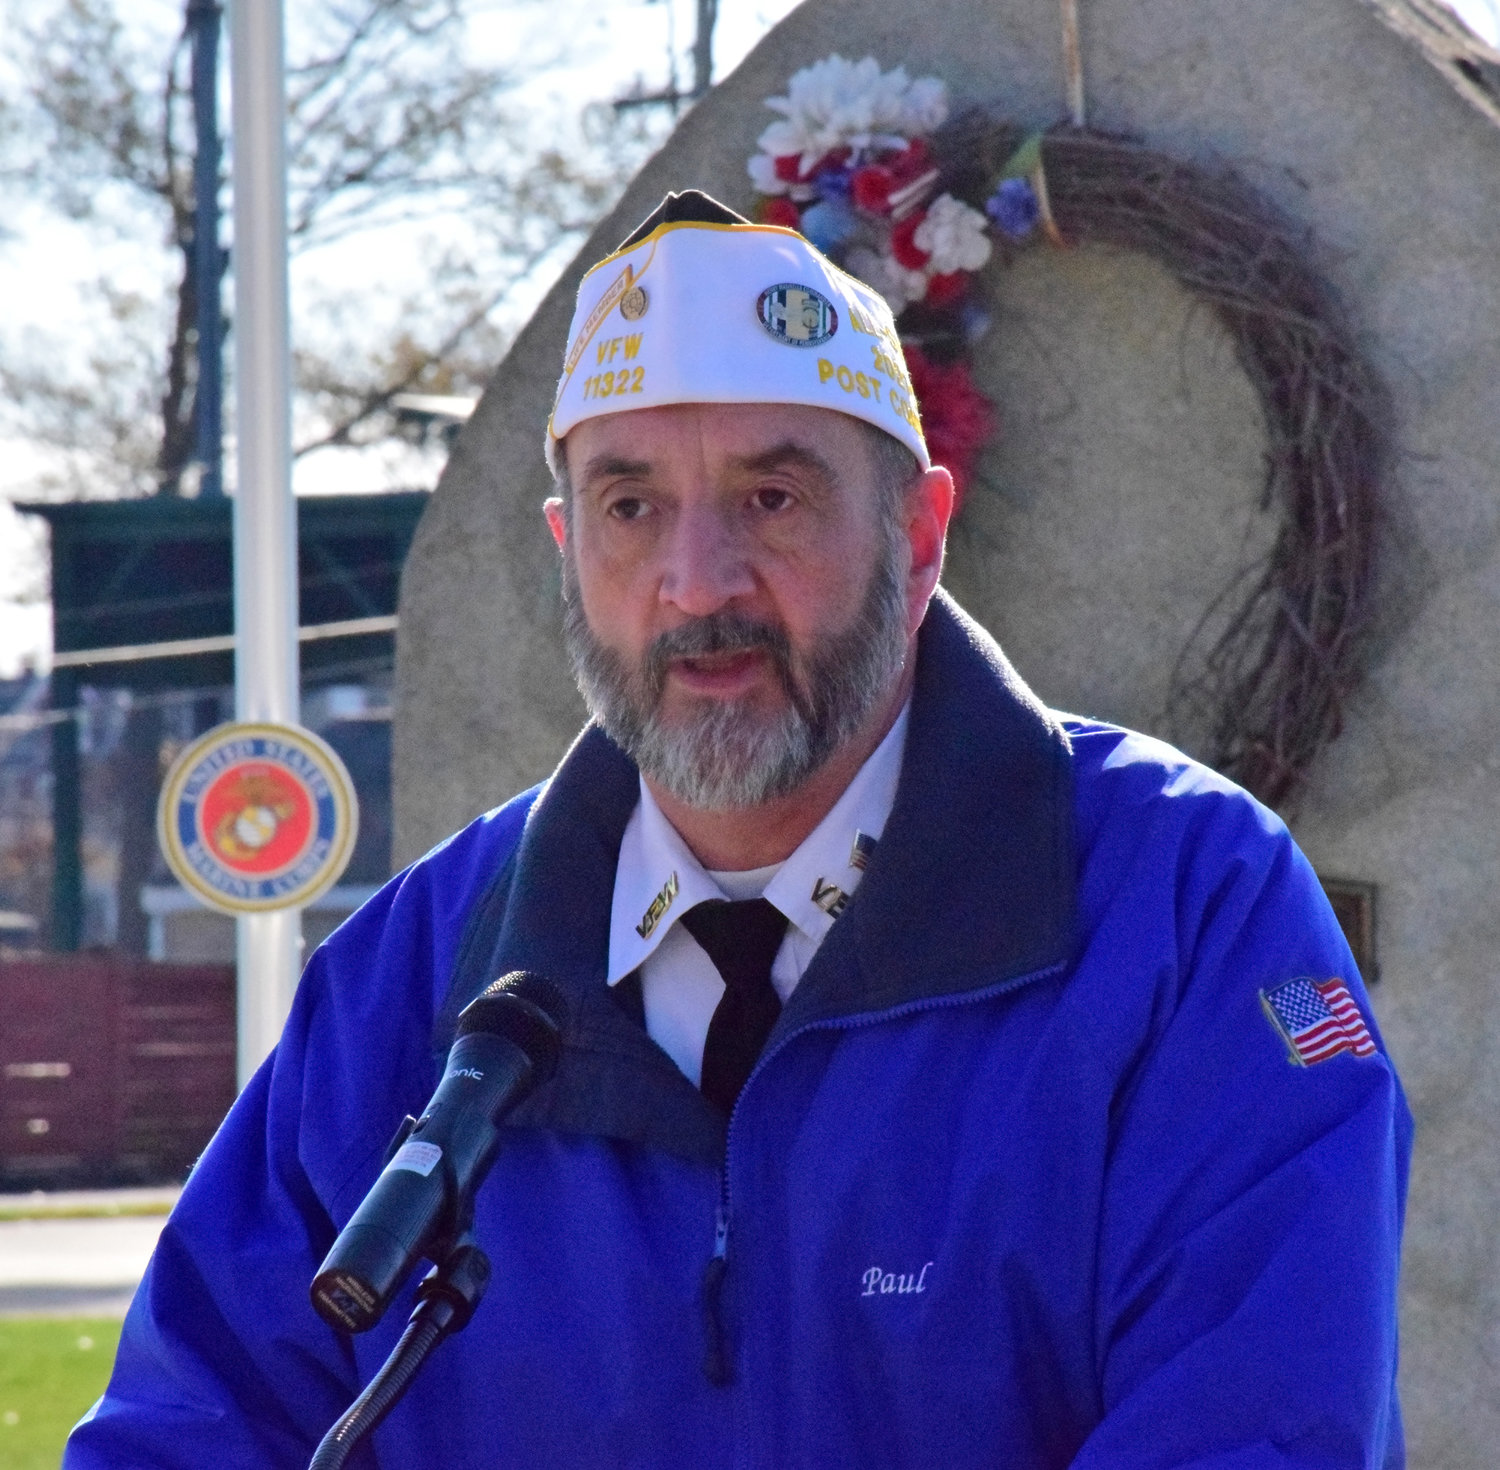 Paul Gerhart, commander of John Rivers Memorial VFW Post 11322.